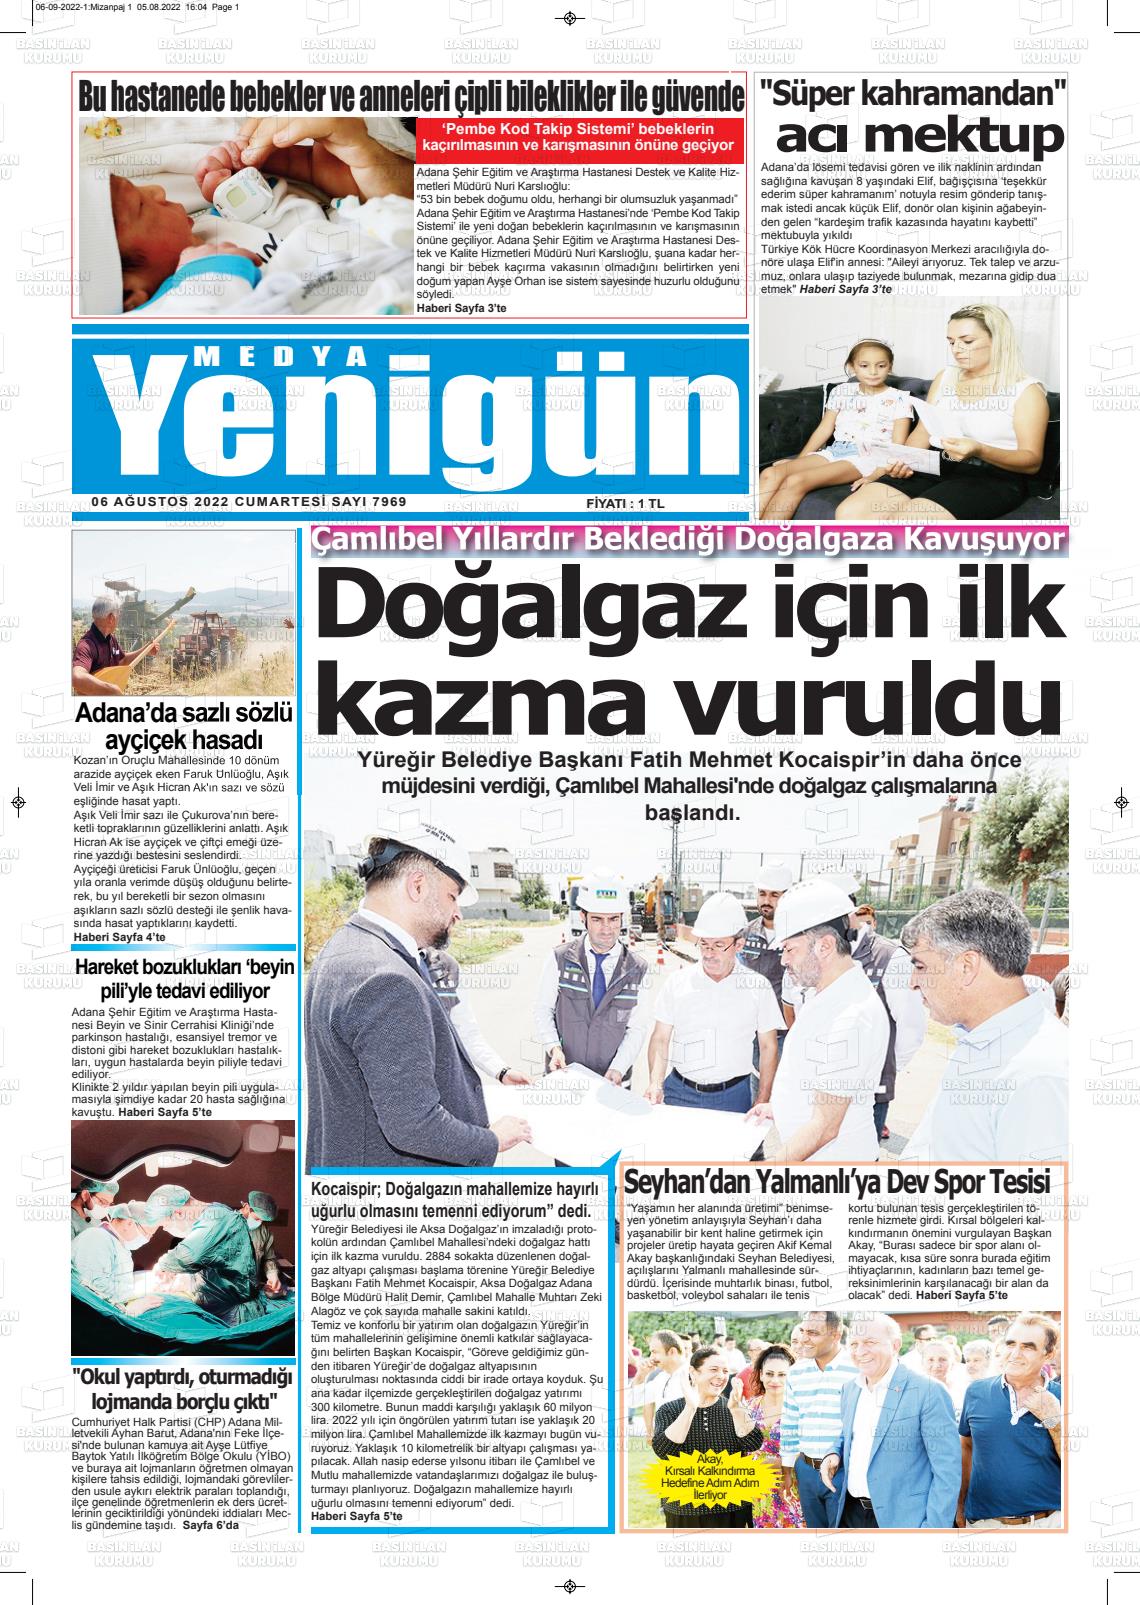 06 Ağustos 2022 Medya Yenigün Gazete Manşeti